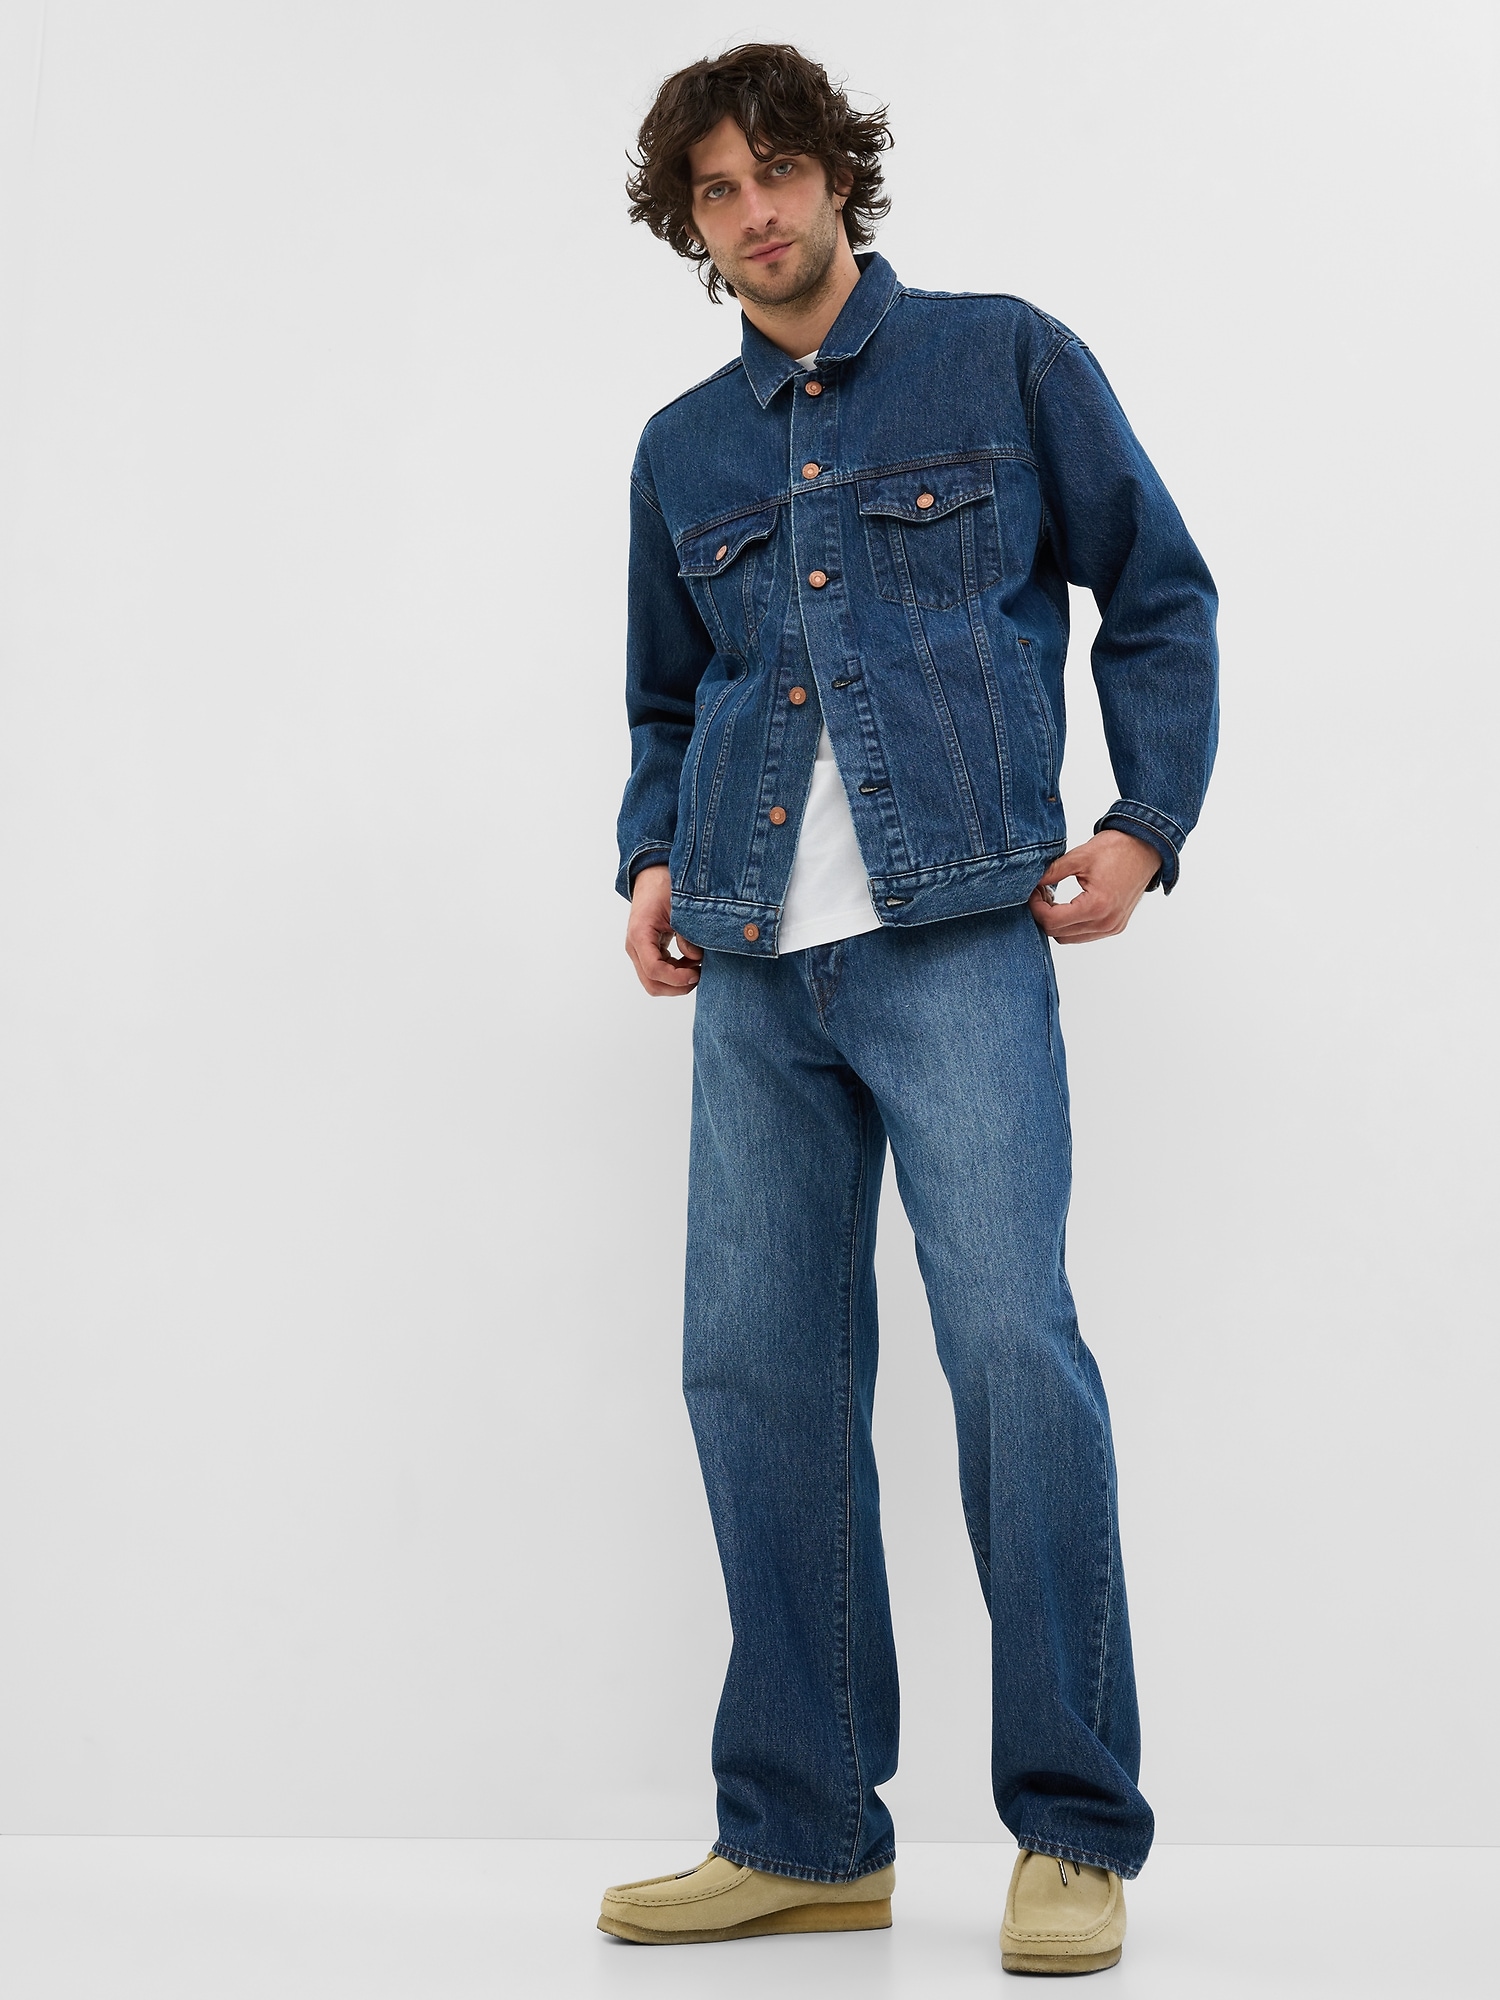 Gap Men's Vintage Straight Opp Jeans, Men's Jeans